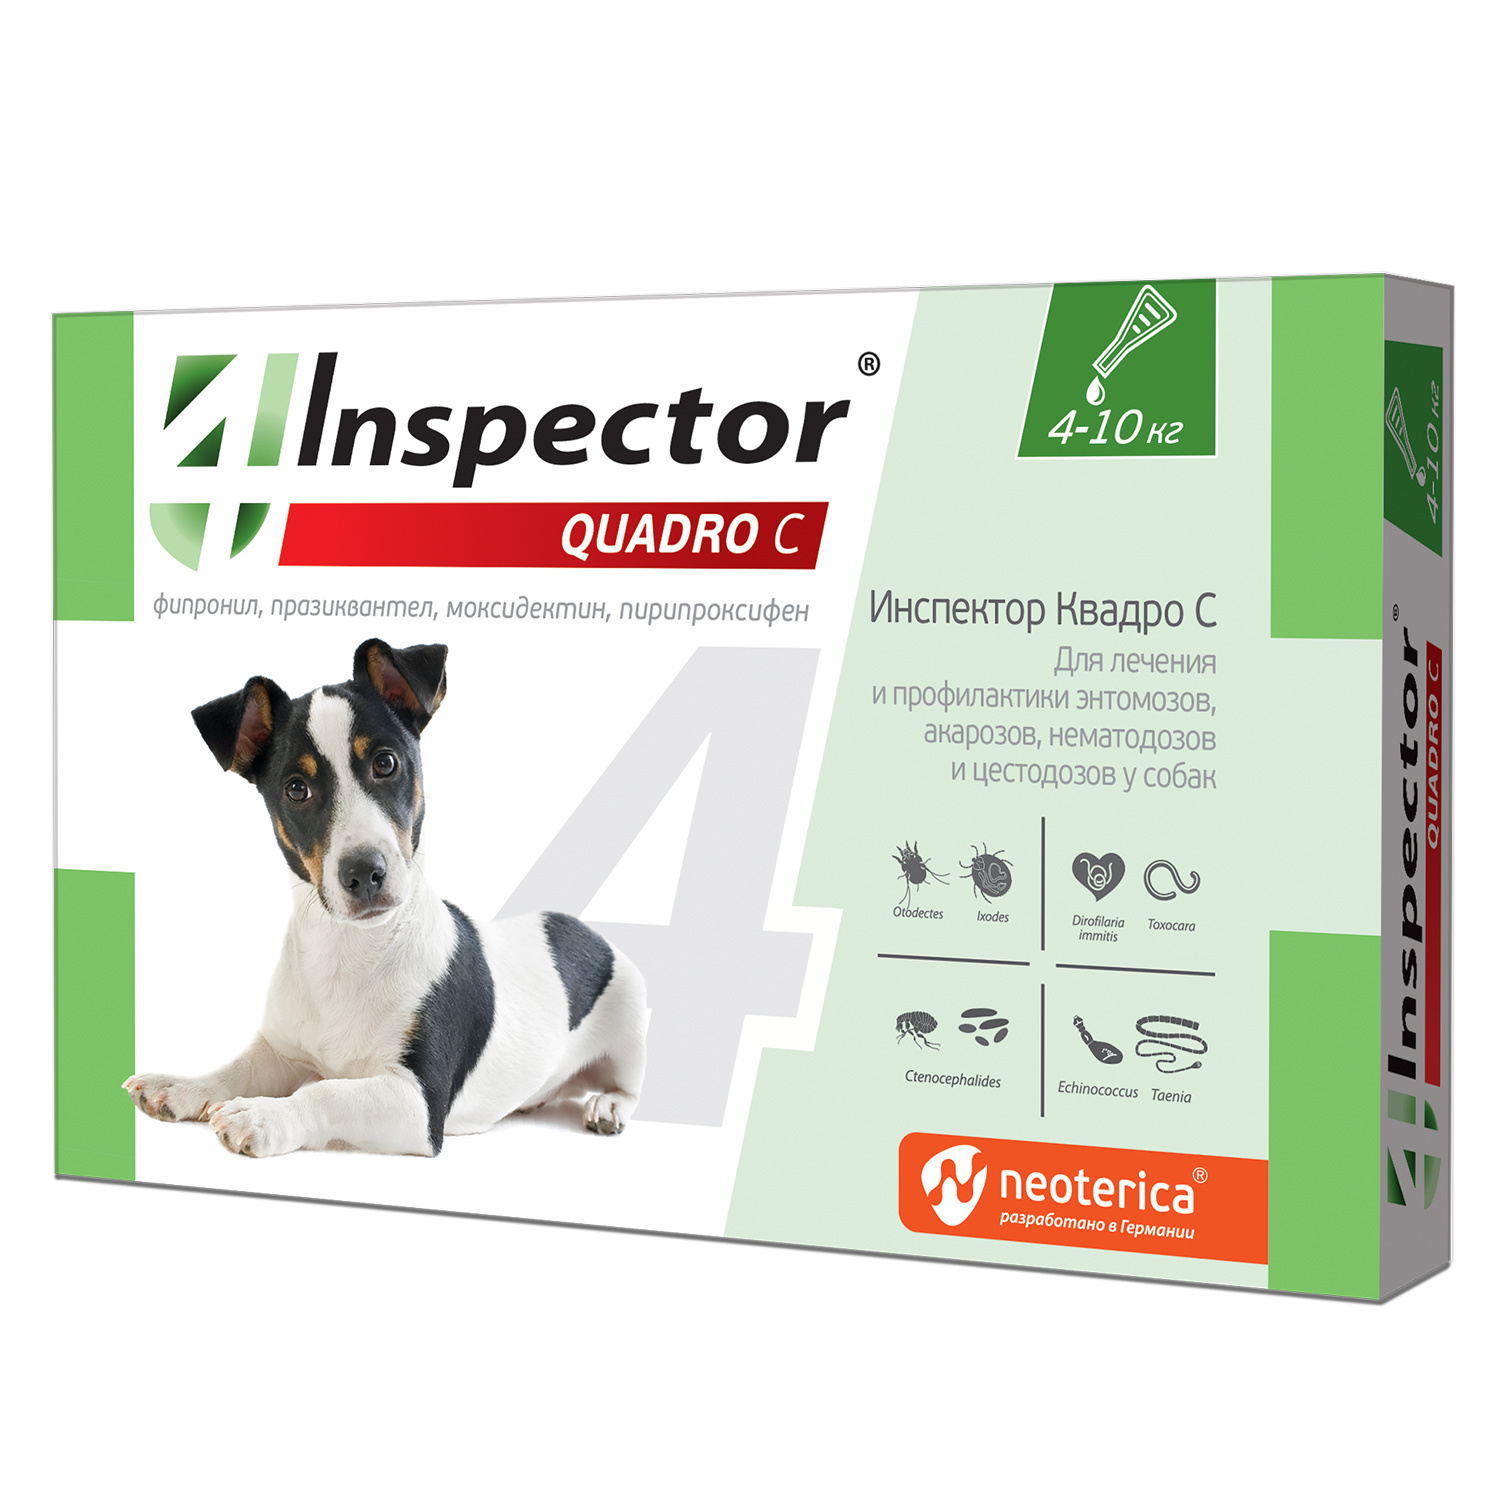 Inspector Inspector quadro капли на холку для собак весом 4-10 кг от клещей, насекомых, глистов (20 г)